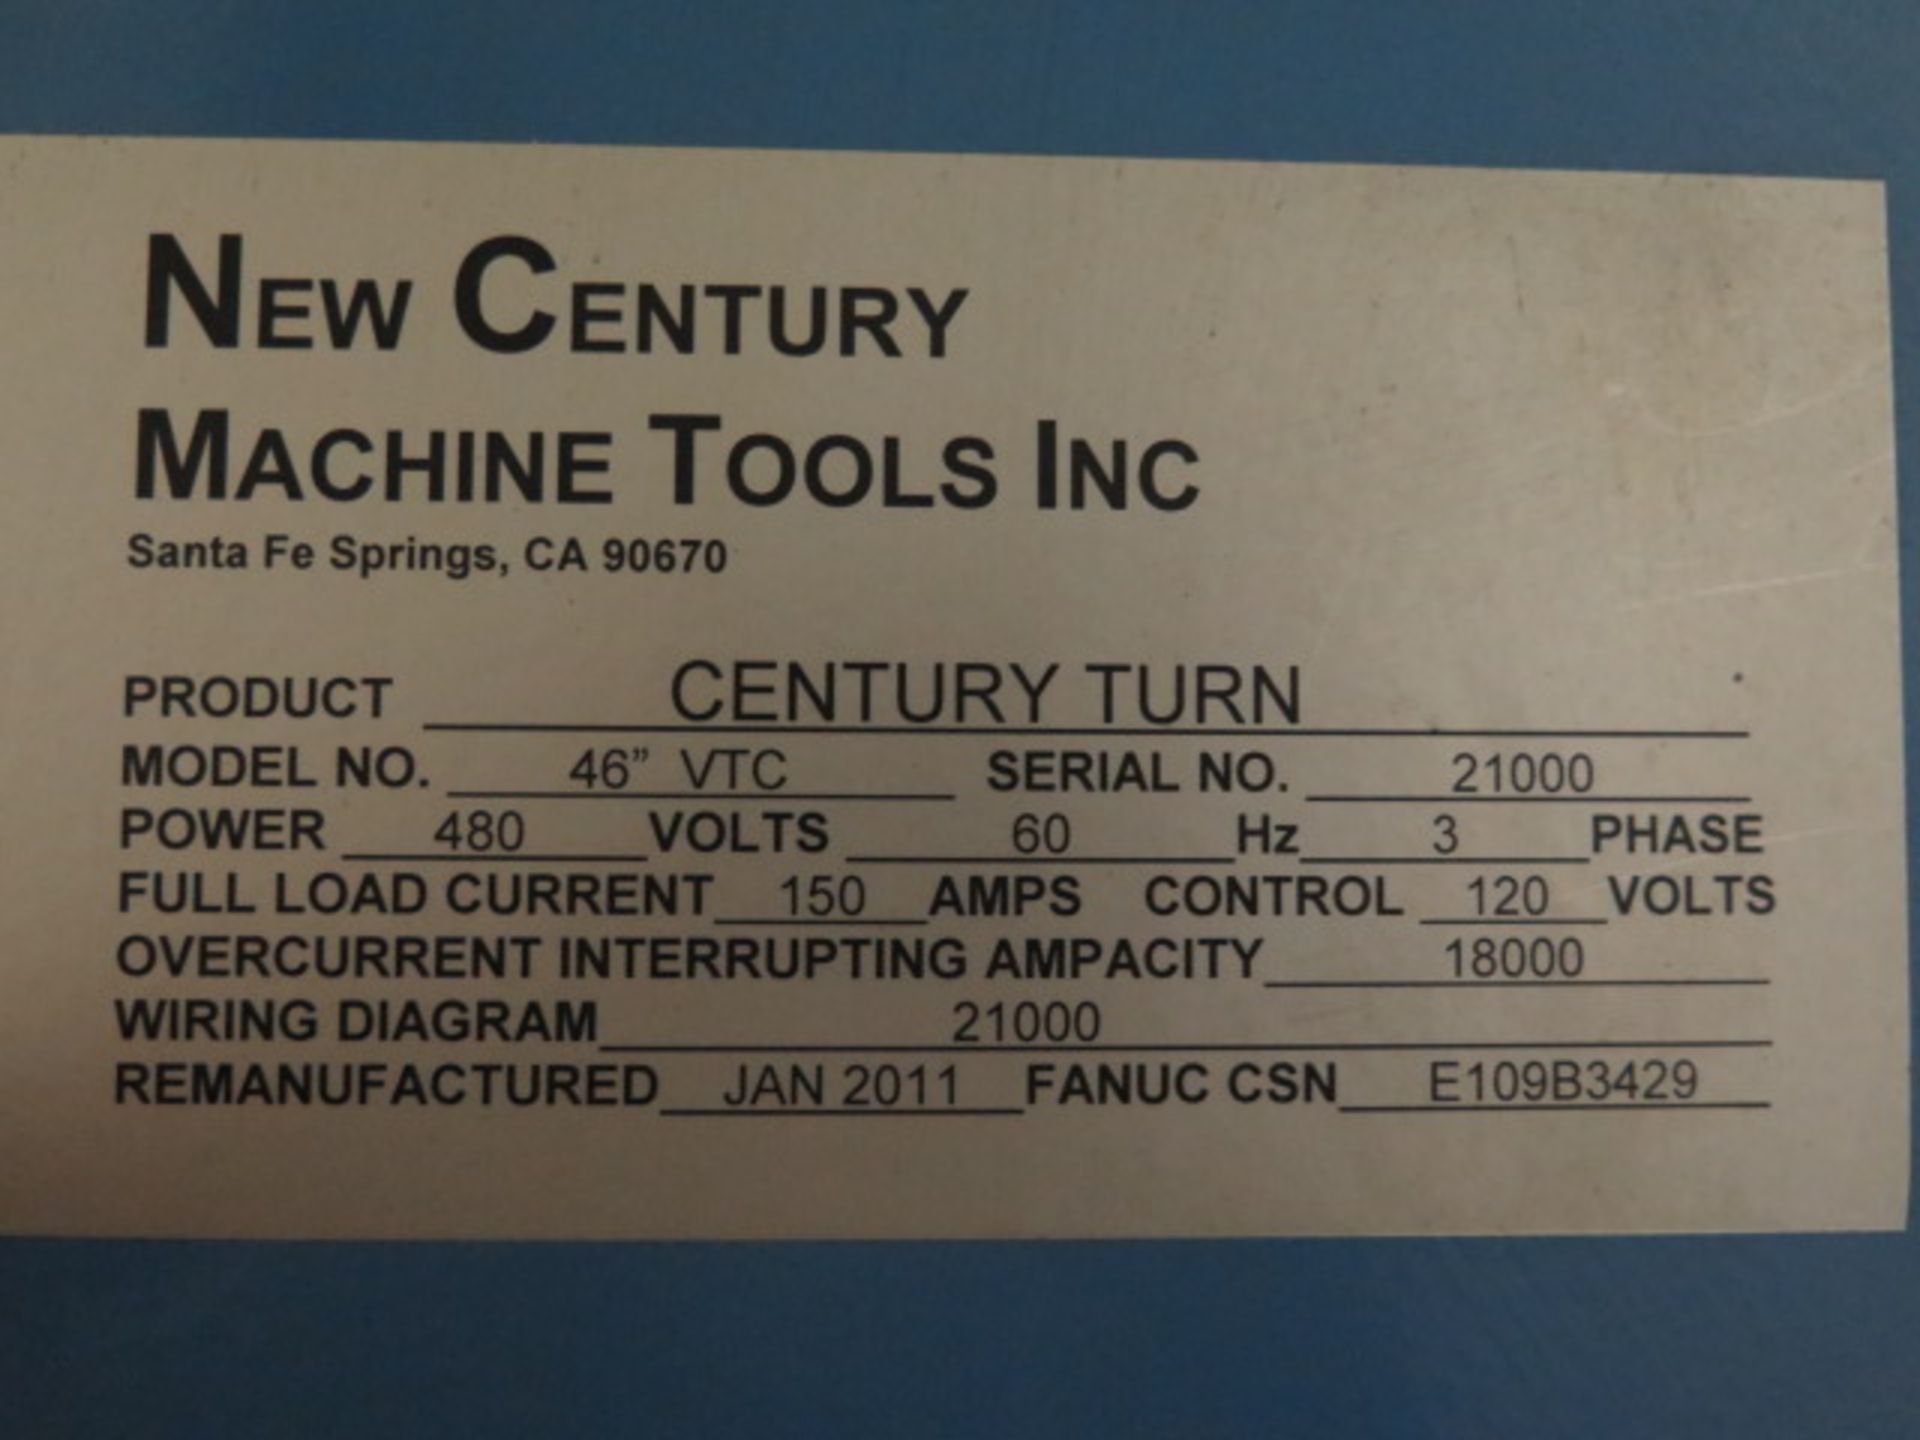 2011 New Century "Century Turn" 46" CNC Vertical Turning Center w/ Fanuc 0i-TD Controls, 12-ATC - Image 18 of 18